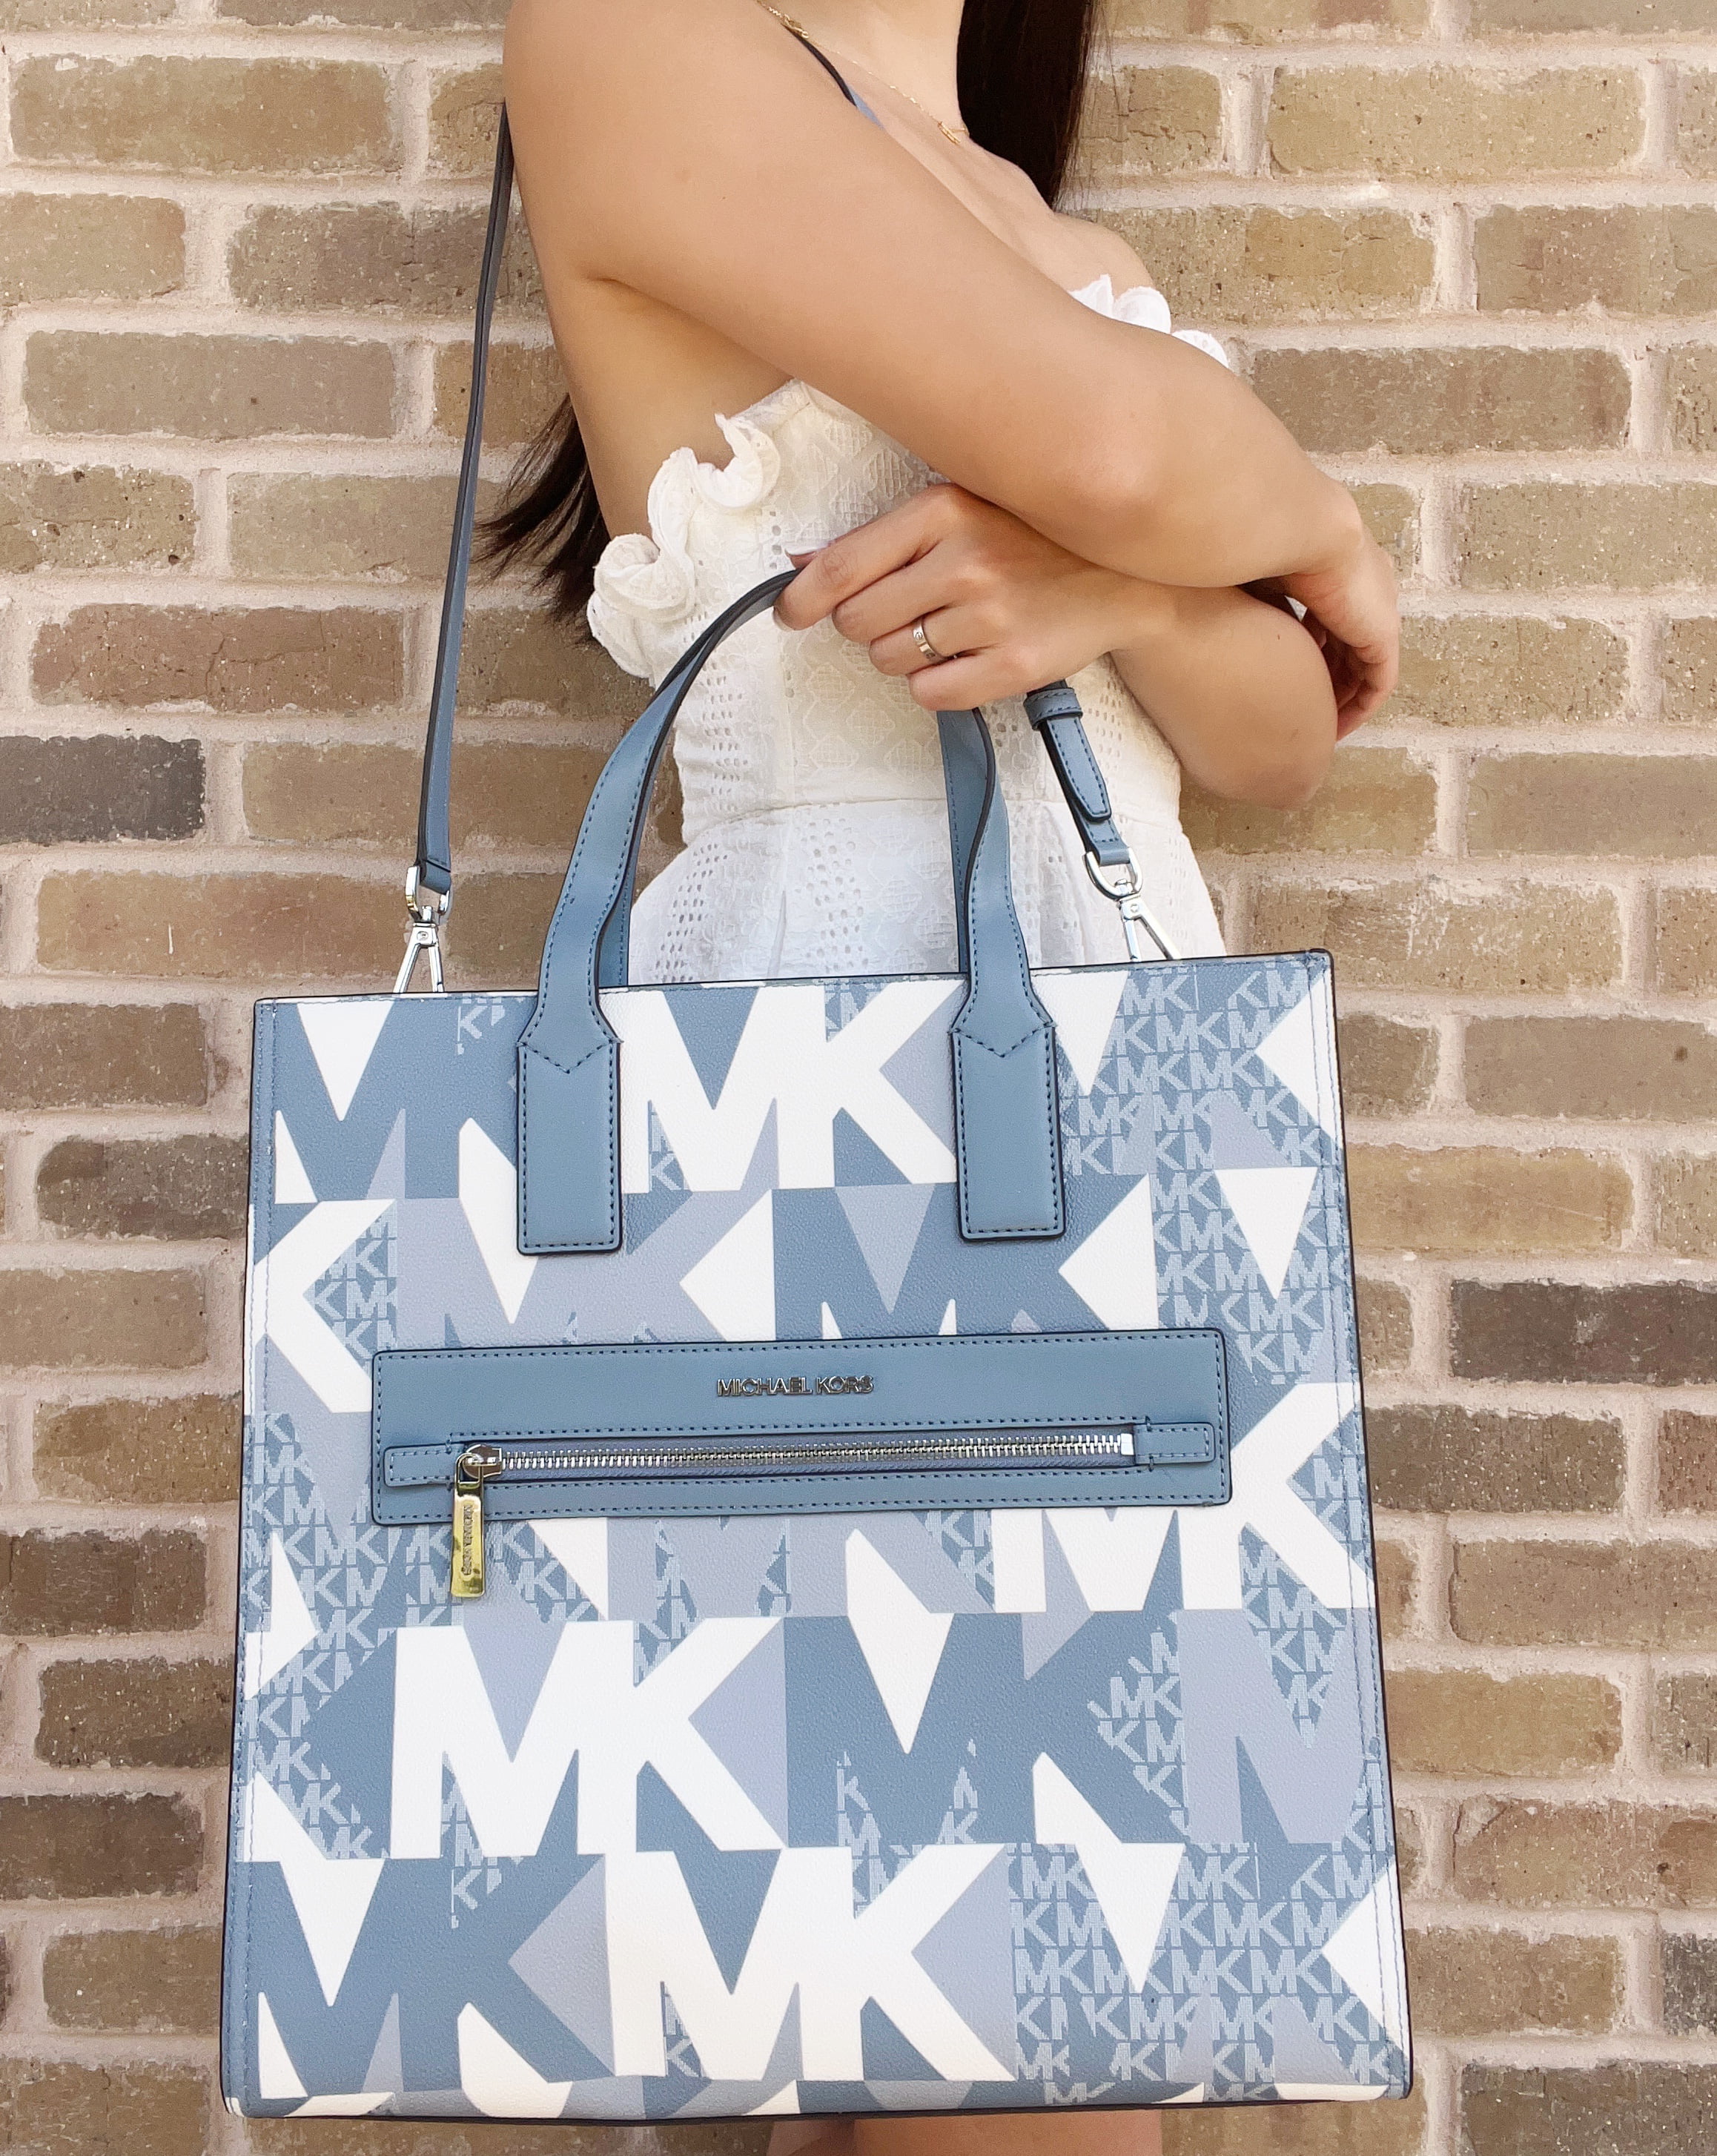 Michael Kors MK Kenly Large Logo Tote Bag Blue - $199 (60% Off